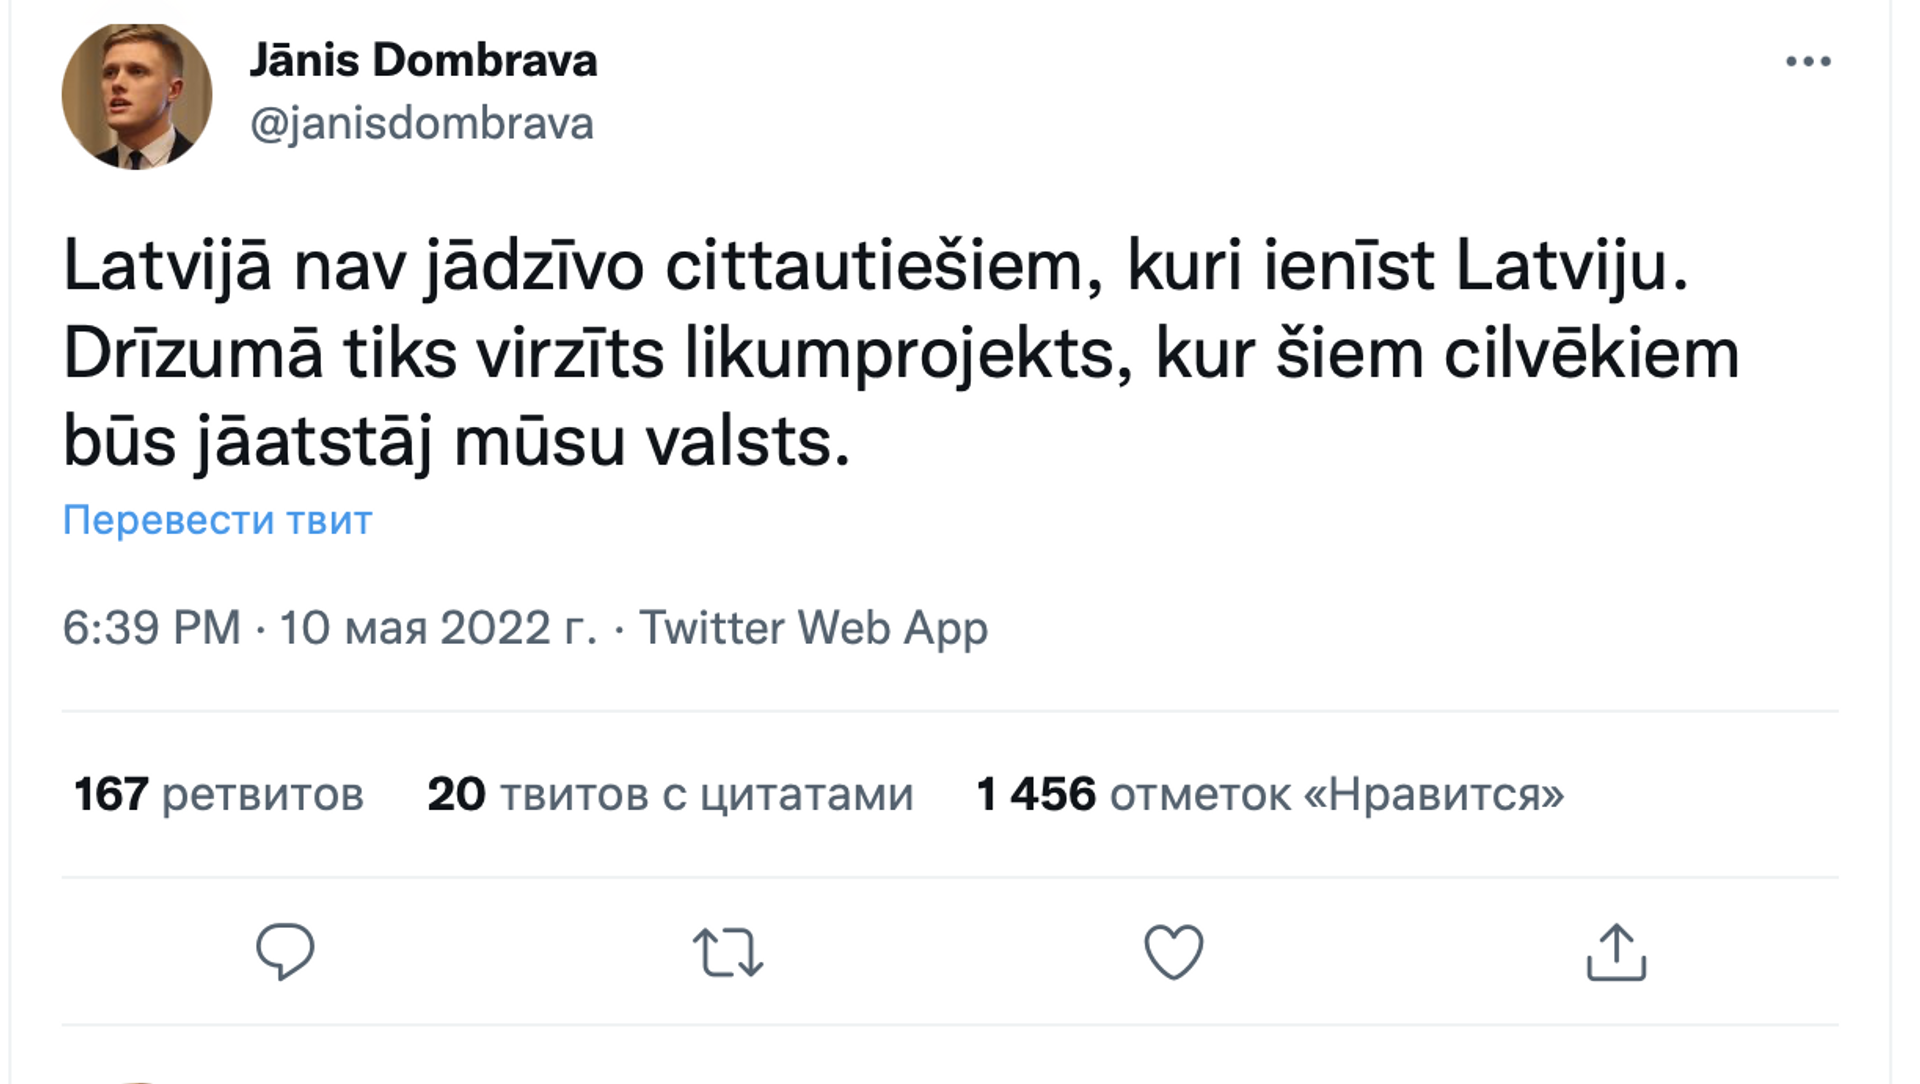 Скриншот поста в Twitter  - Sputnik Латвия, 1920, 11.05.2022